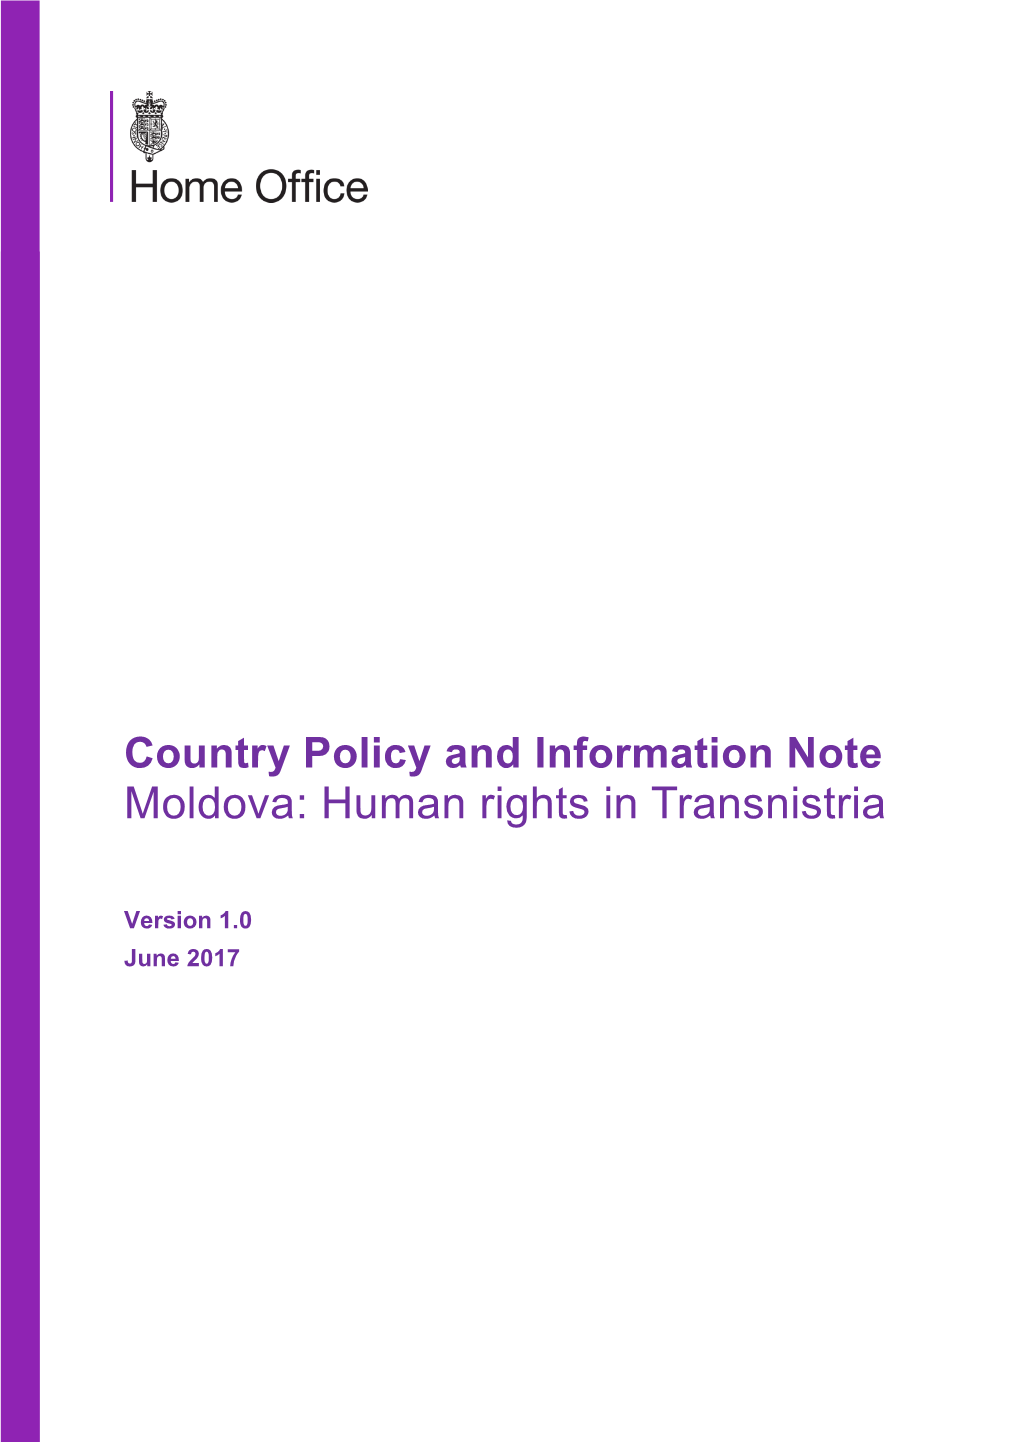 Moldova: Human Rights in Transnistria